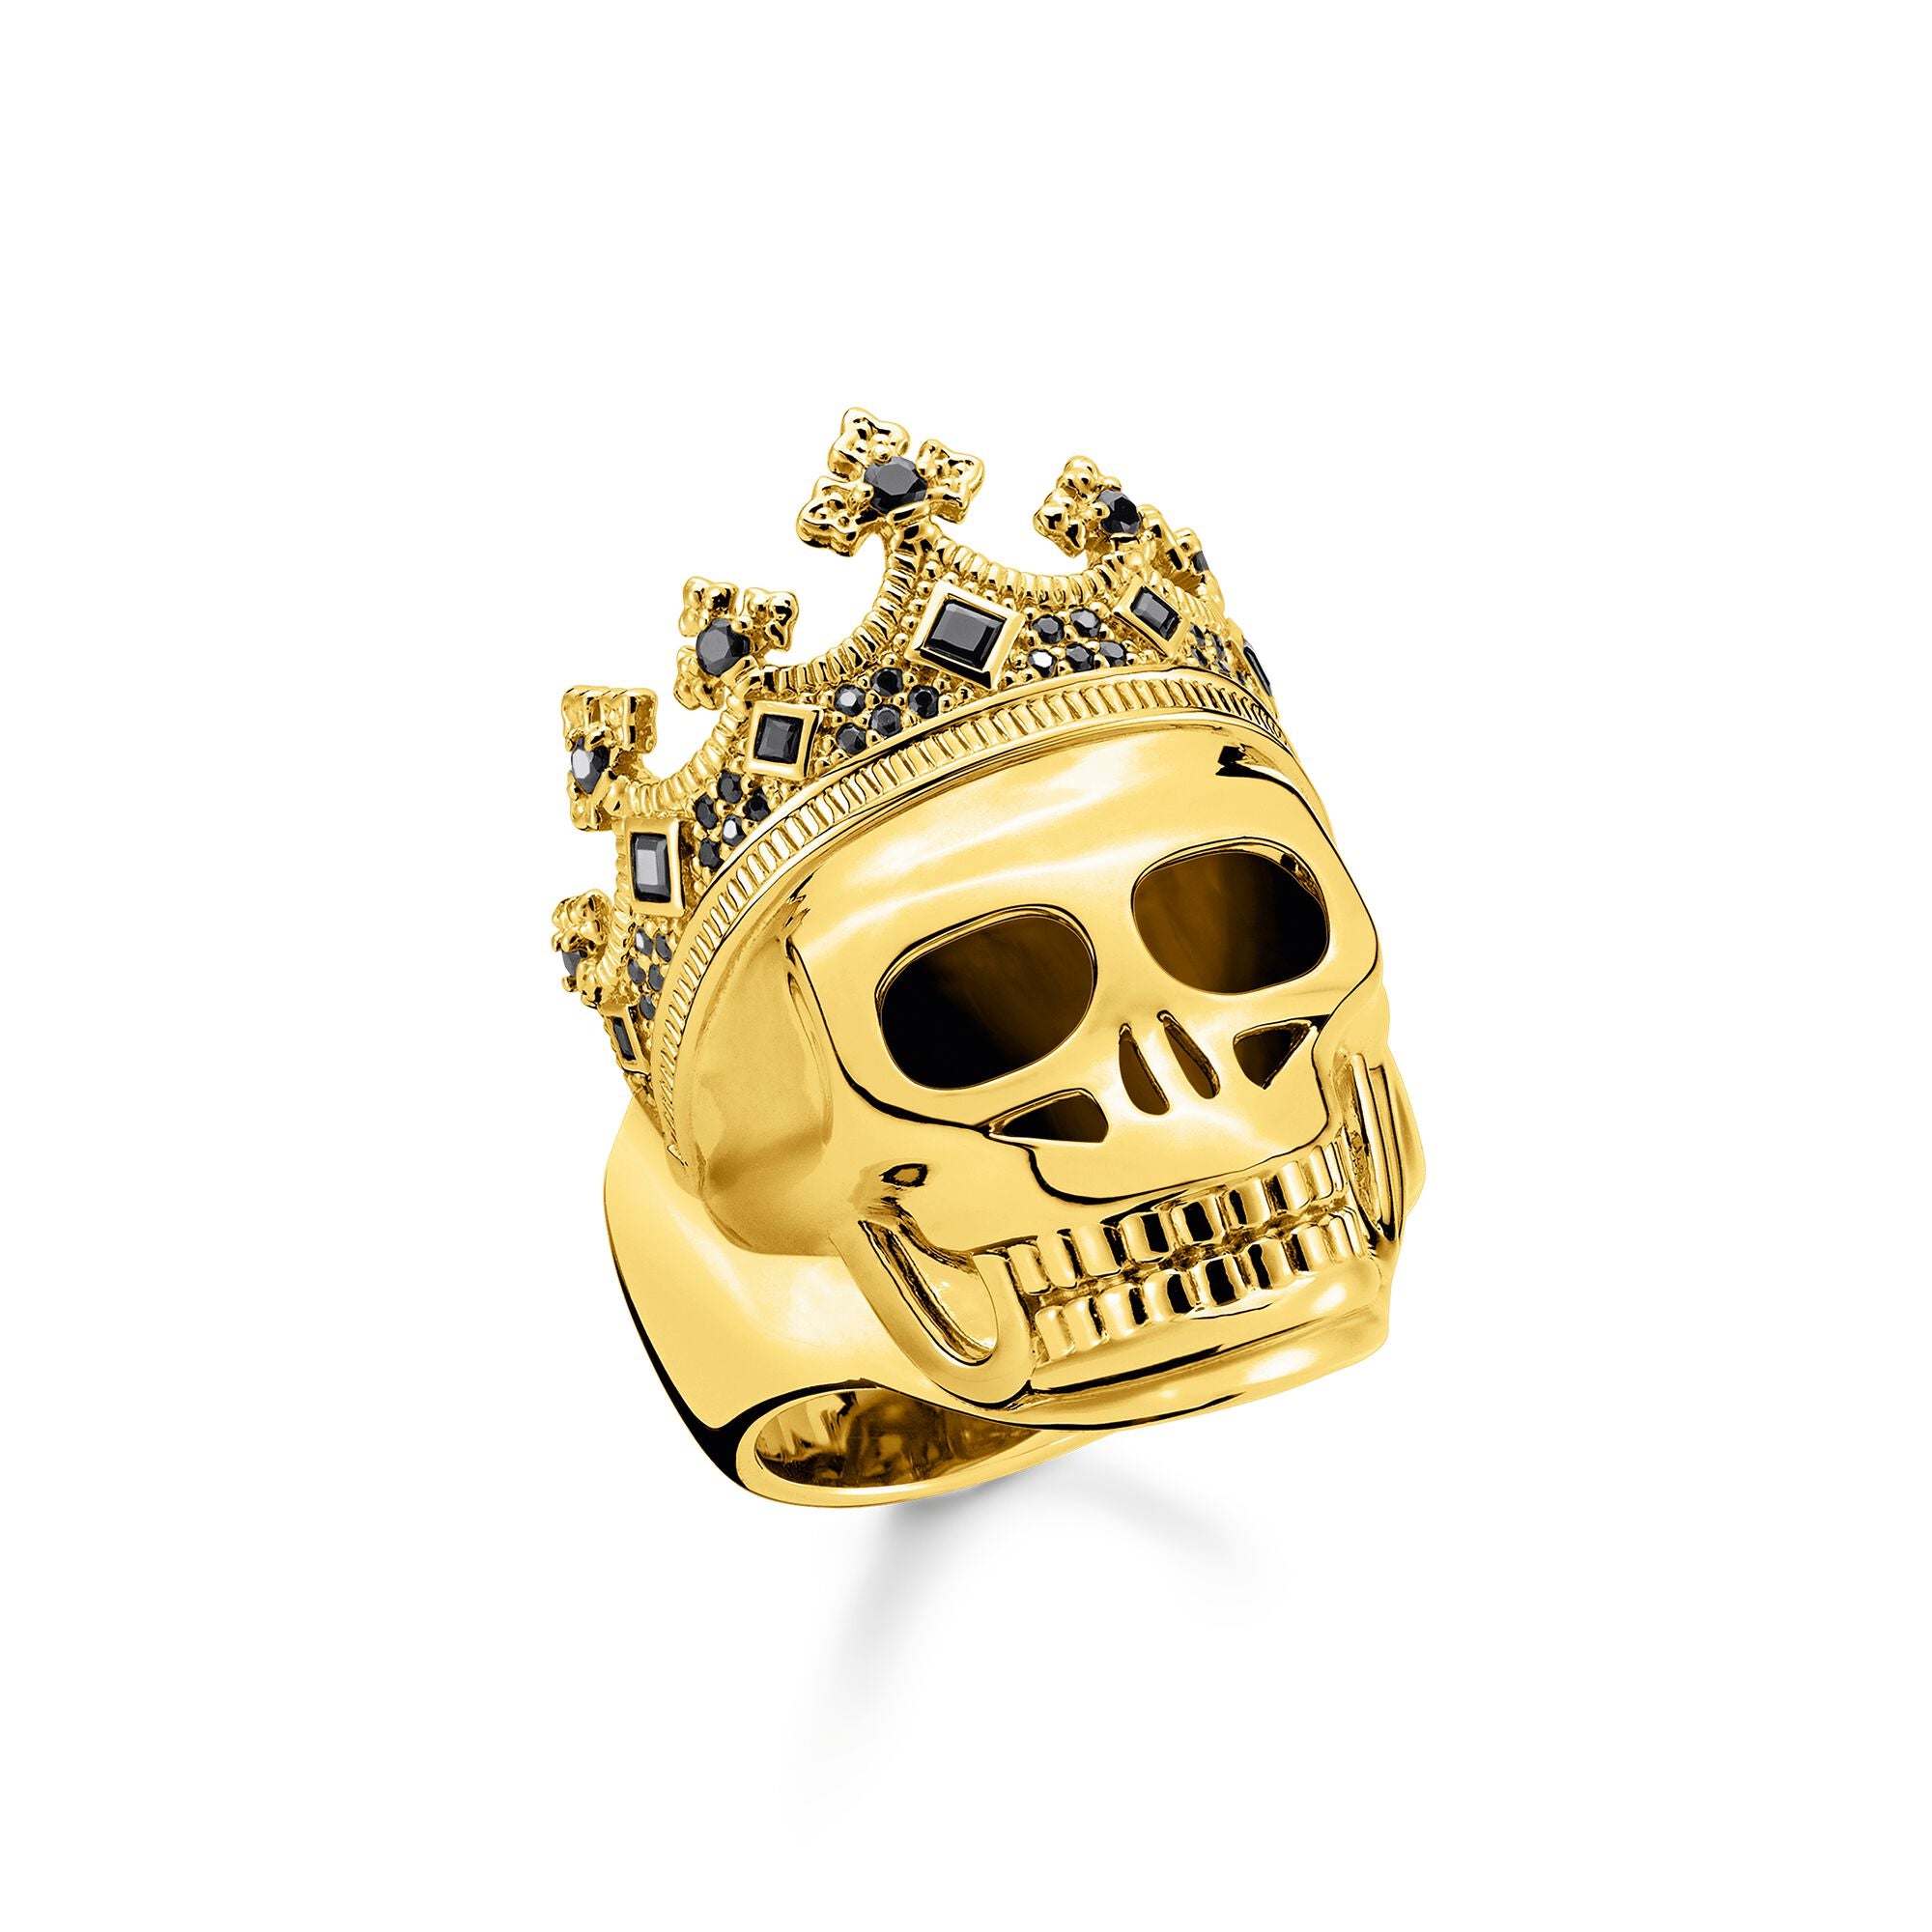 Thomas Sabo 18k Gold Plated Skull King Ring